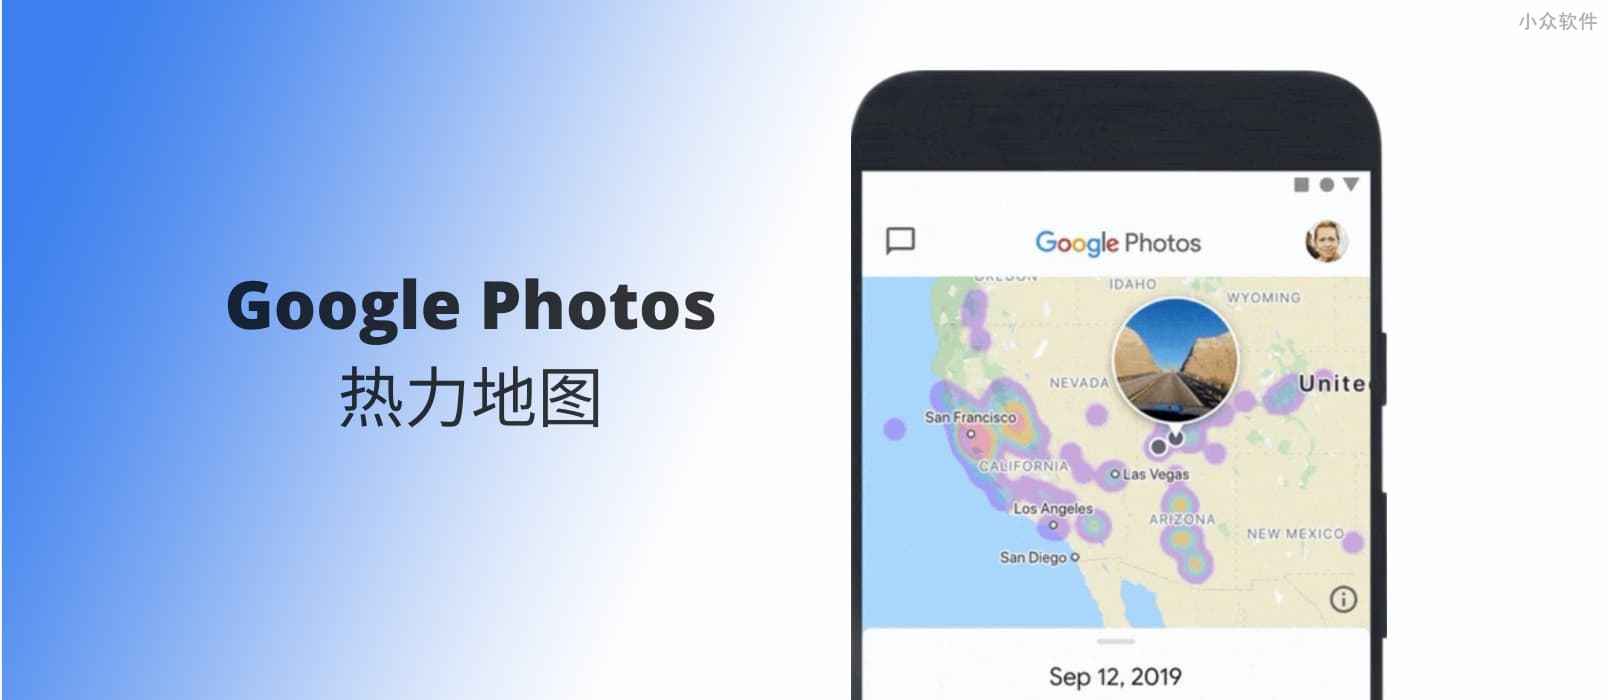 Google Photos 新增照片热力地图功能，这可能是最直观的地图显示照片功能